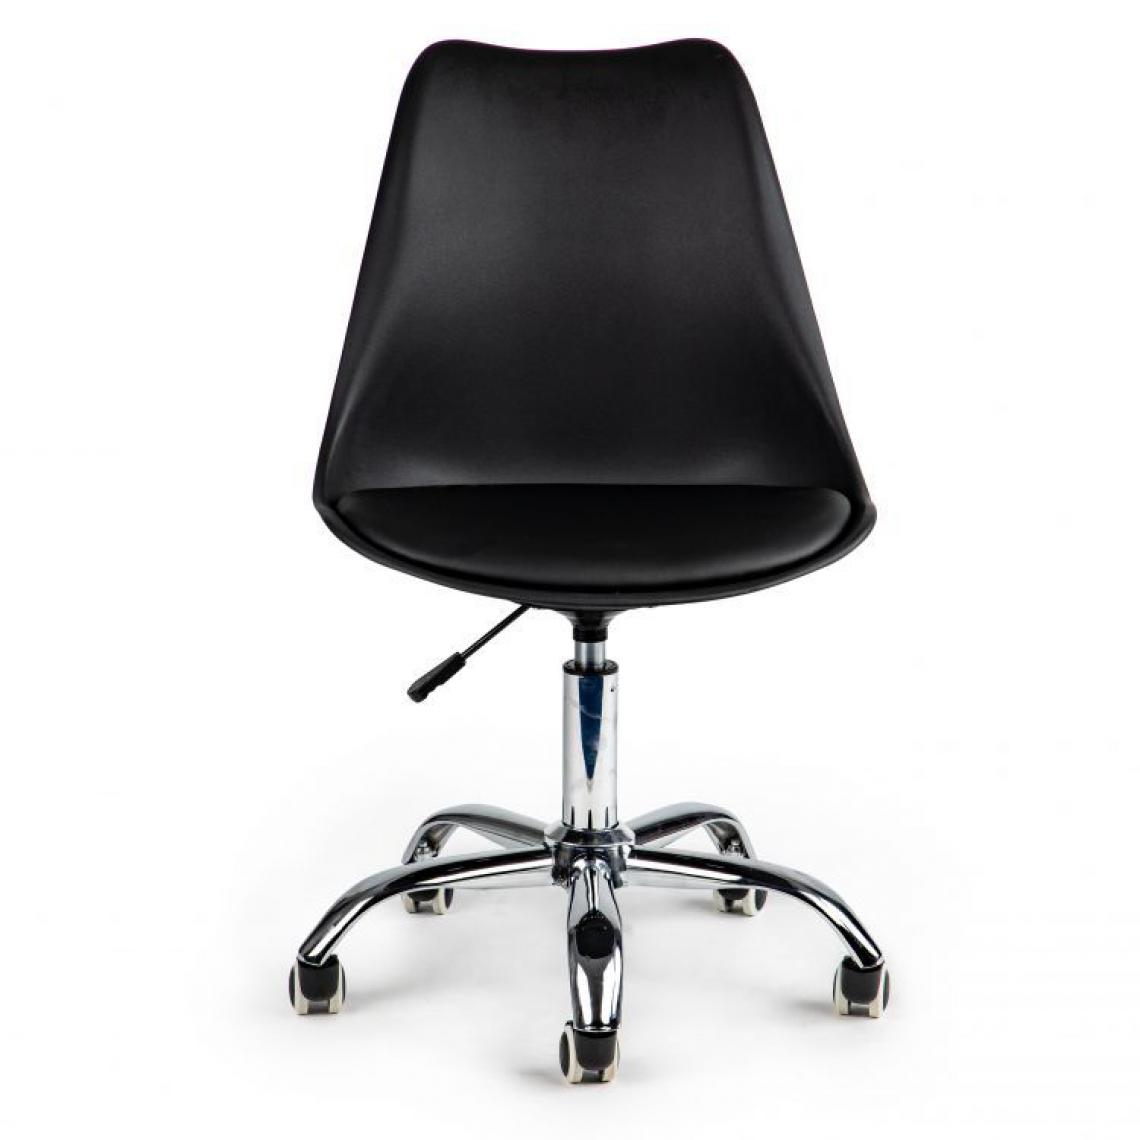 Hucoco - MSTORE - Chaise de bureau style moderne cabinet - 94x49x42 - Hauteur réglable - Pivotante - Noir - Chaises